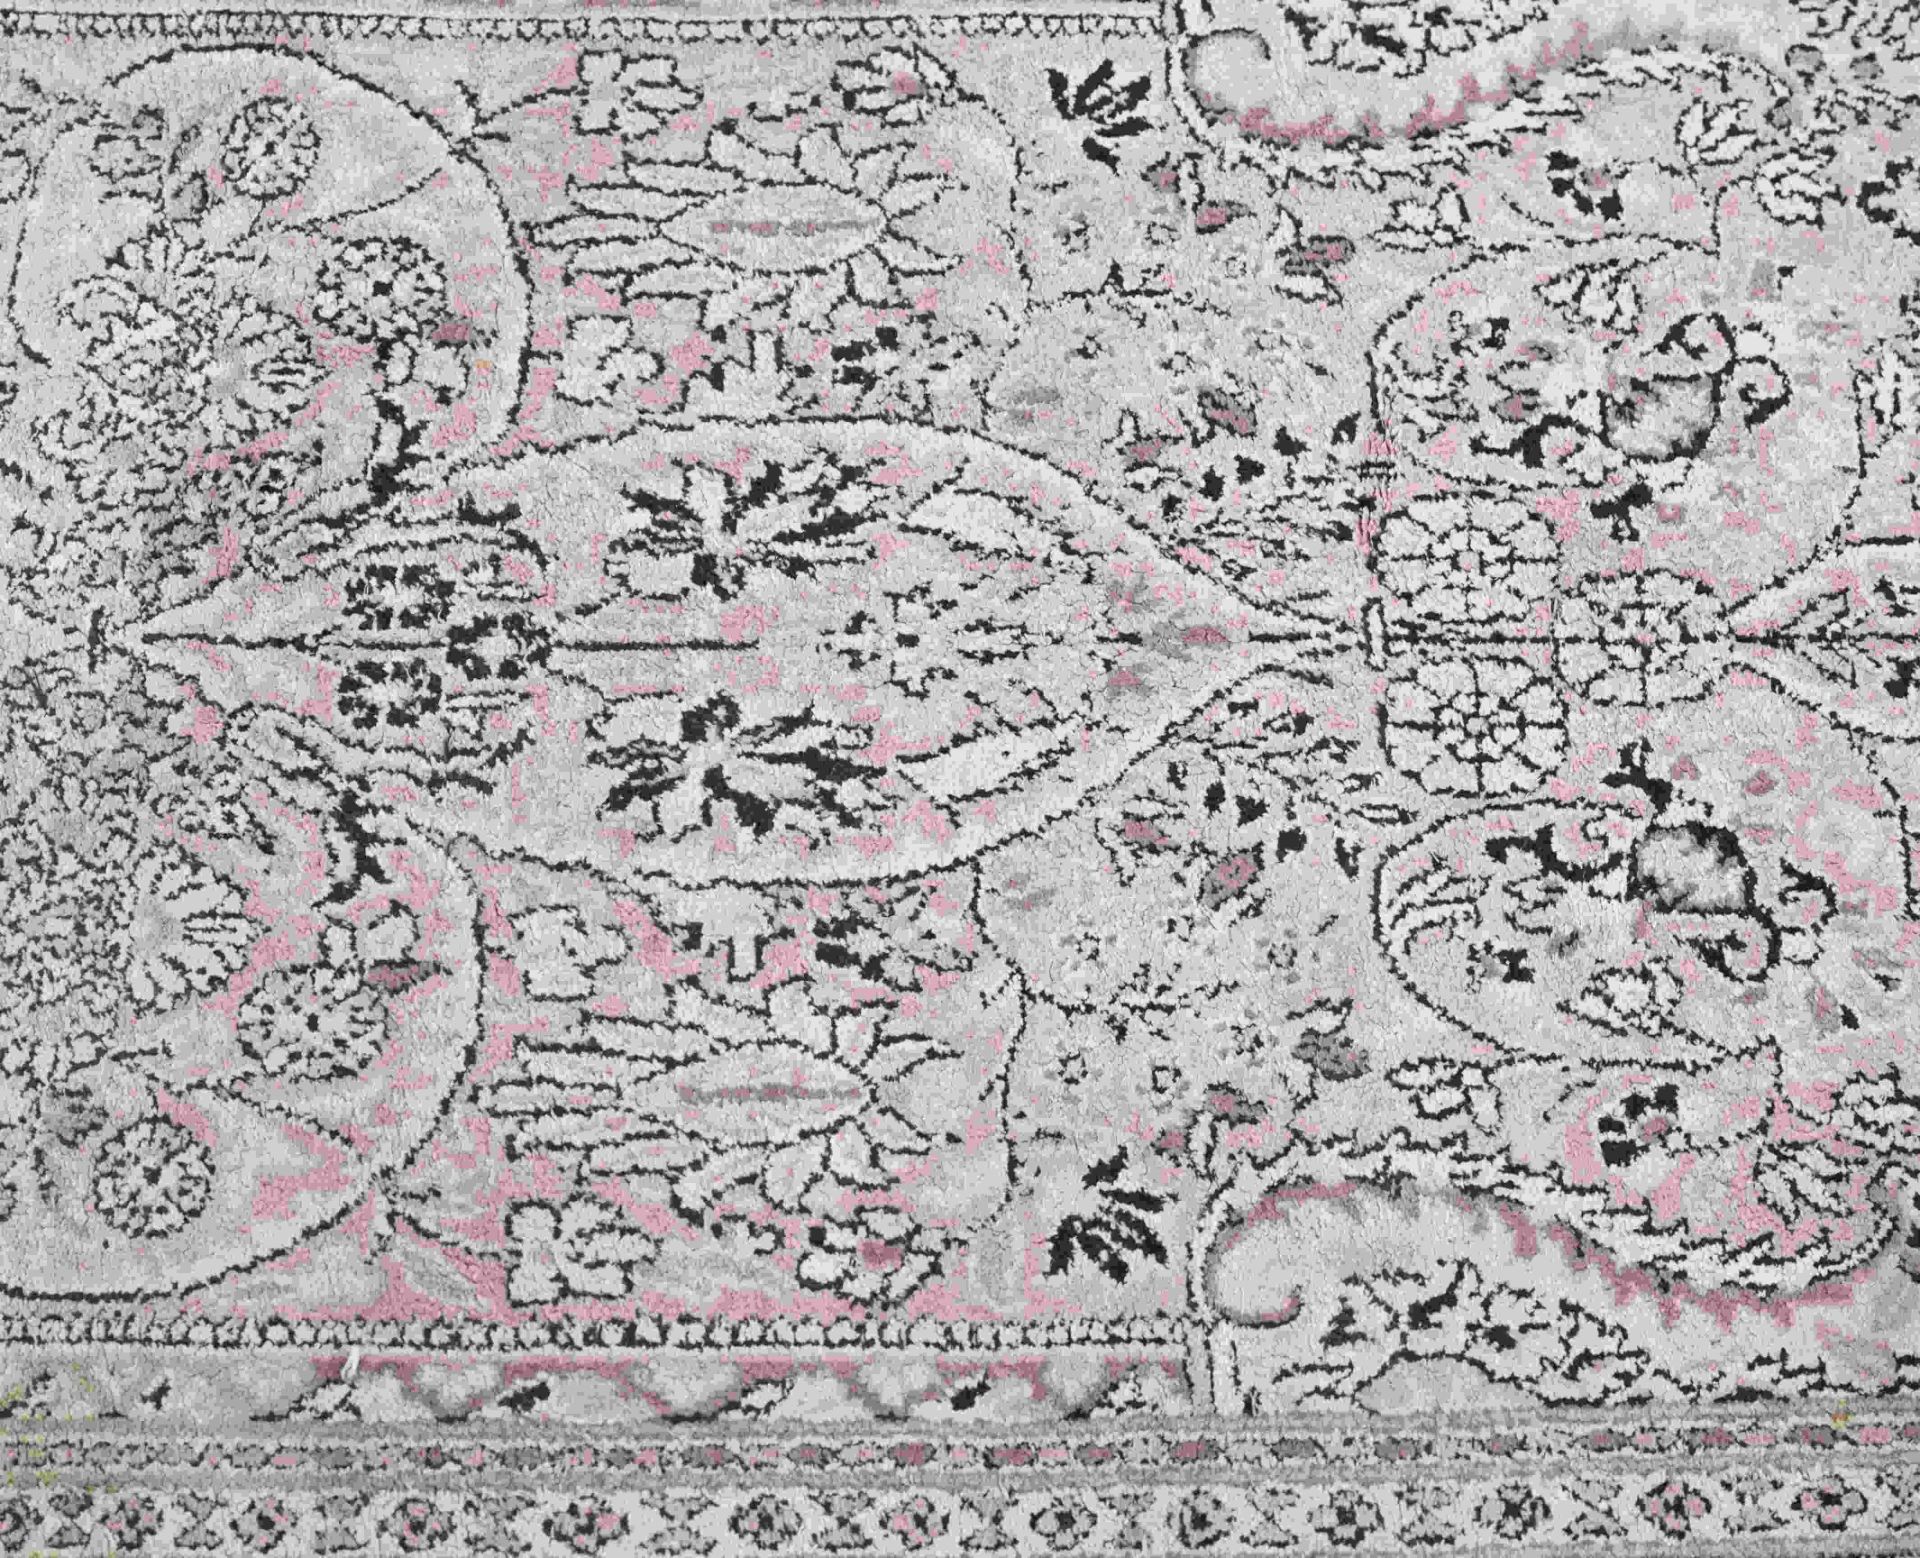 Persian rug, 95 x 148 cm. - Bild 2 aus 3